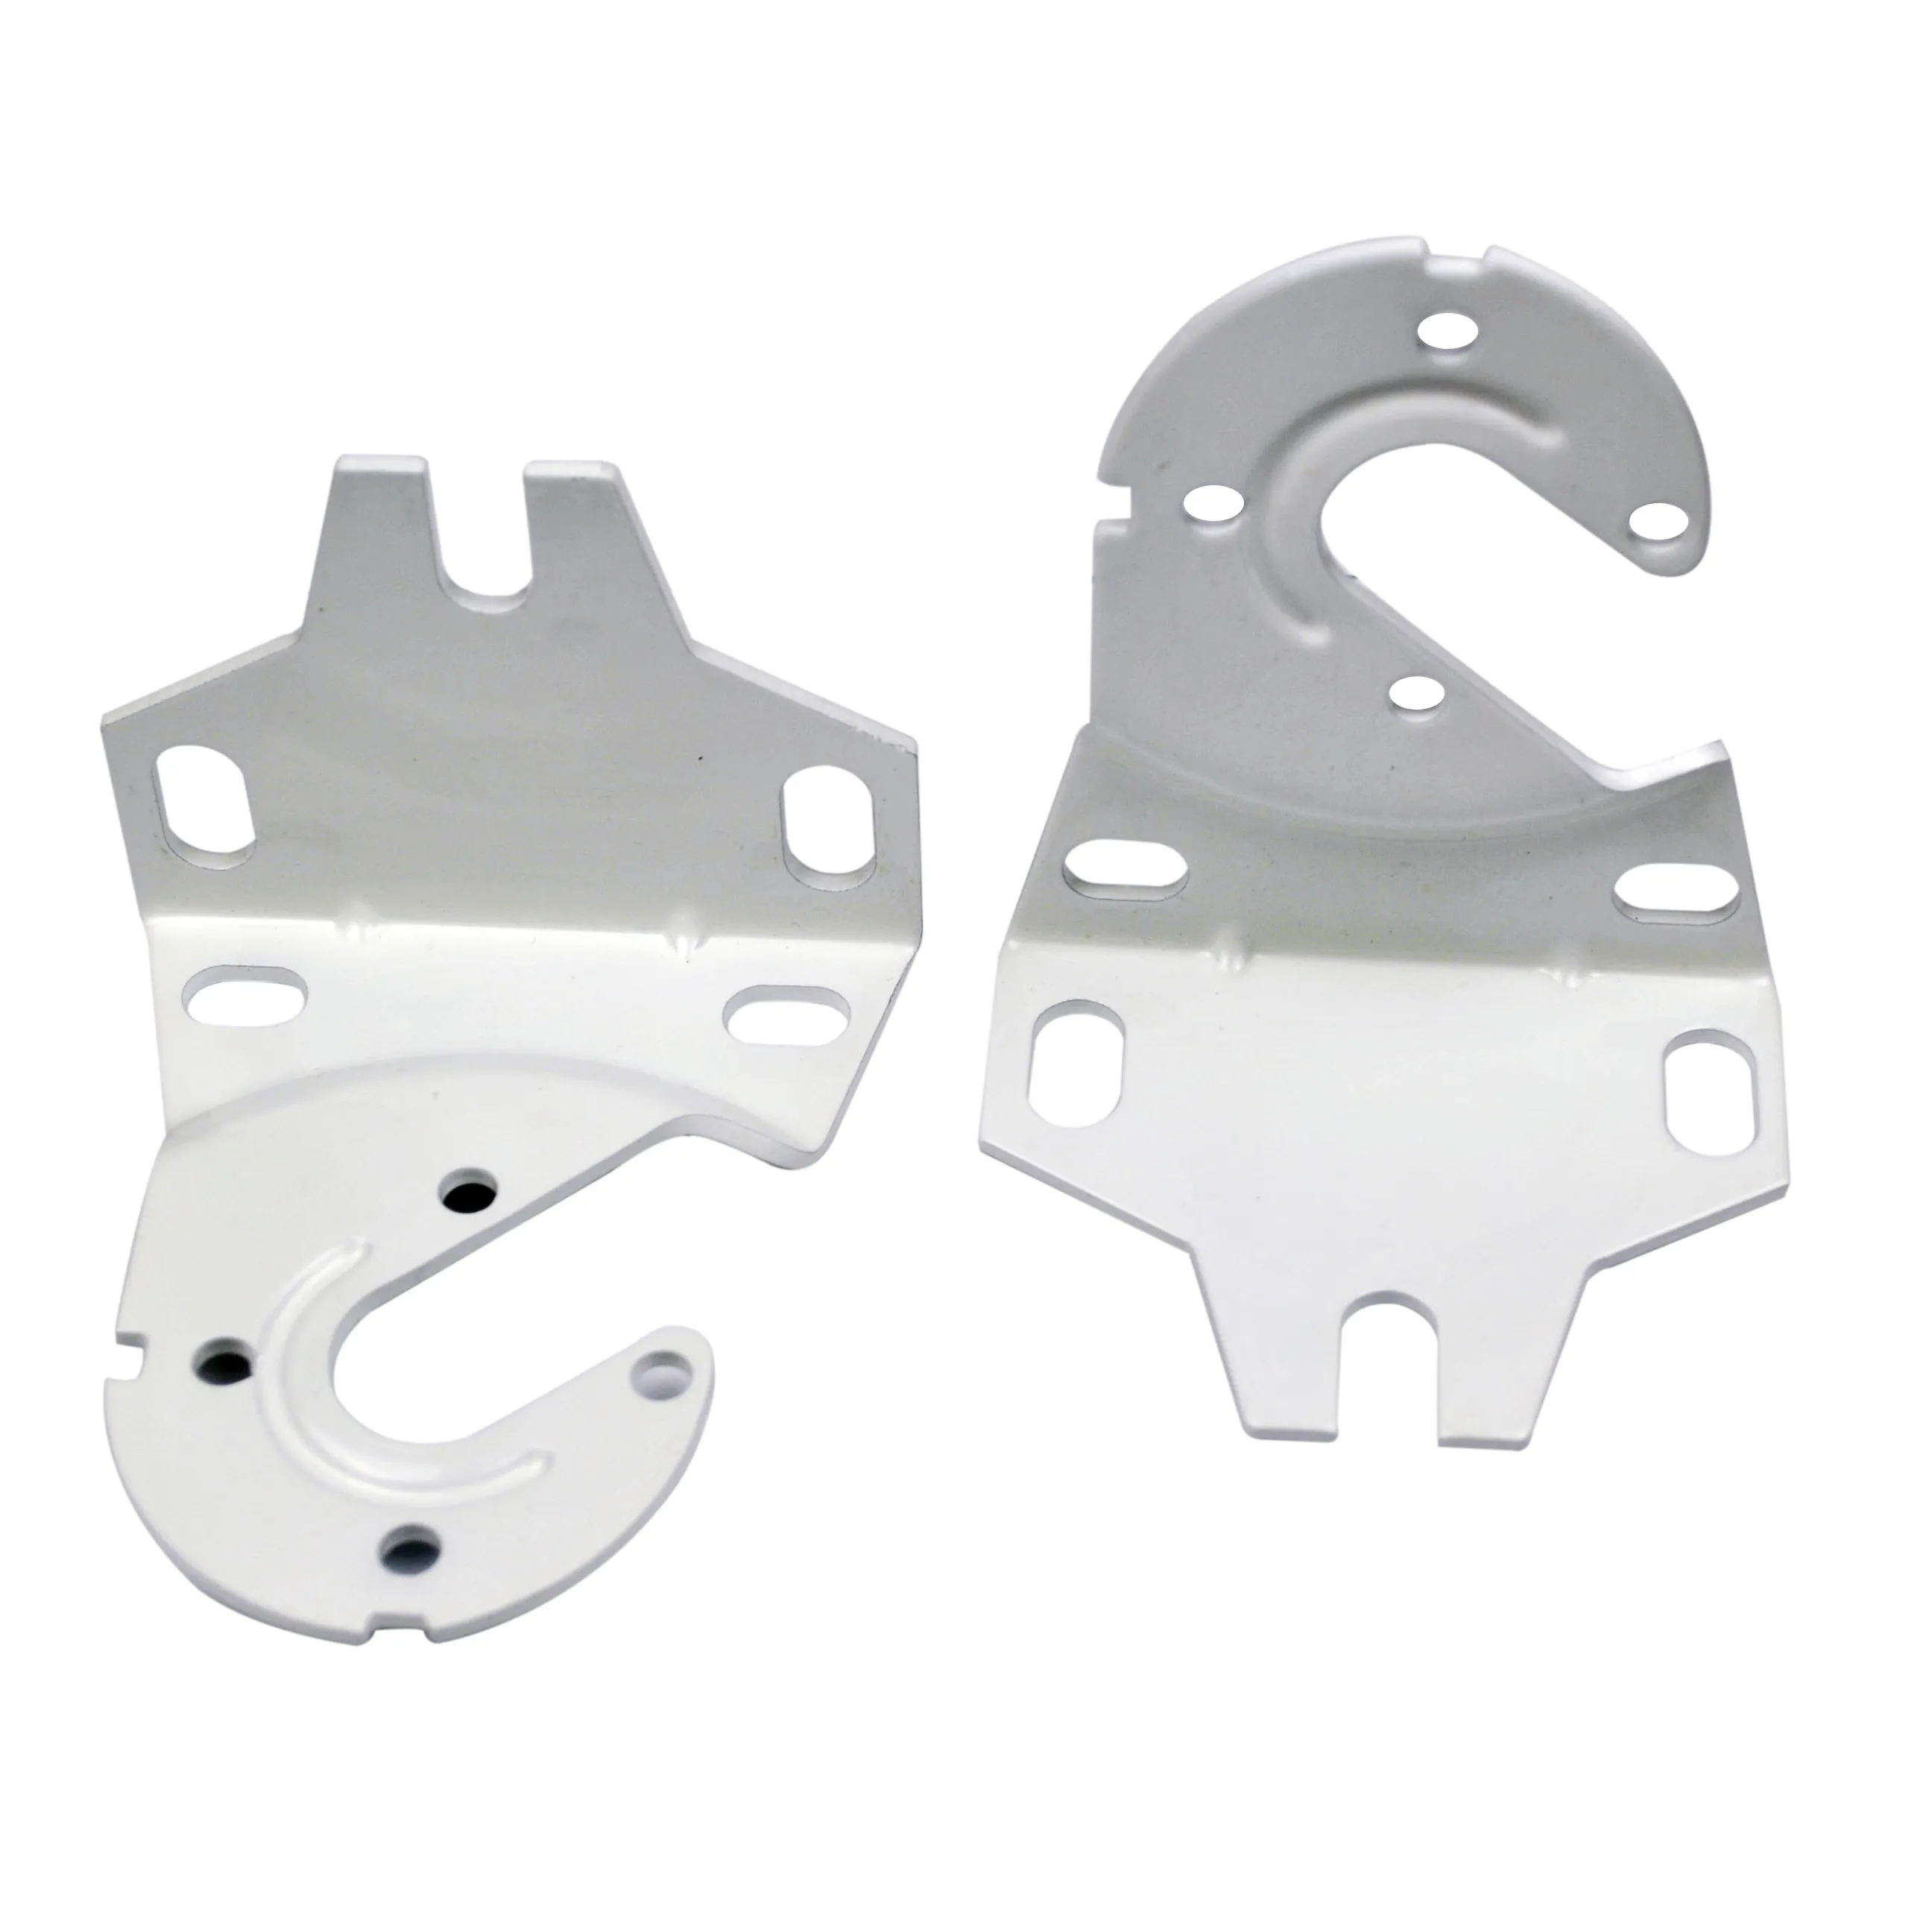 Suporte para mecanismo de rolo de toldo, suporte de ferro, componentes de toldo ao ar livre, componente de persianas de rolo